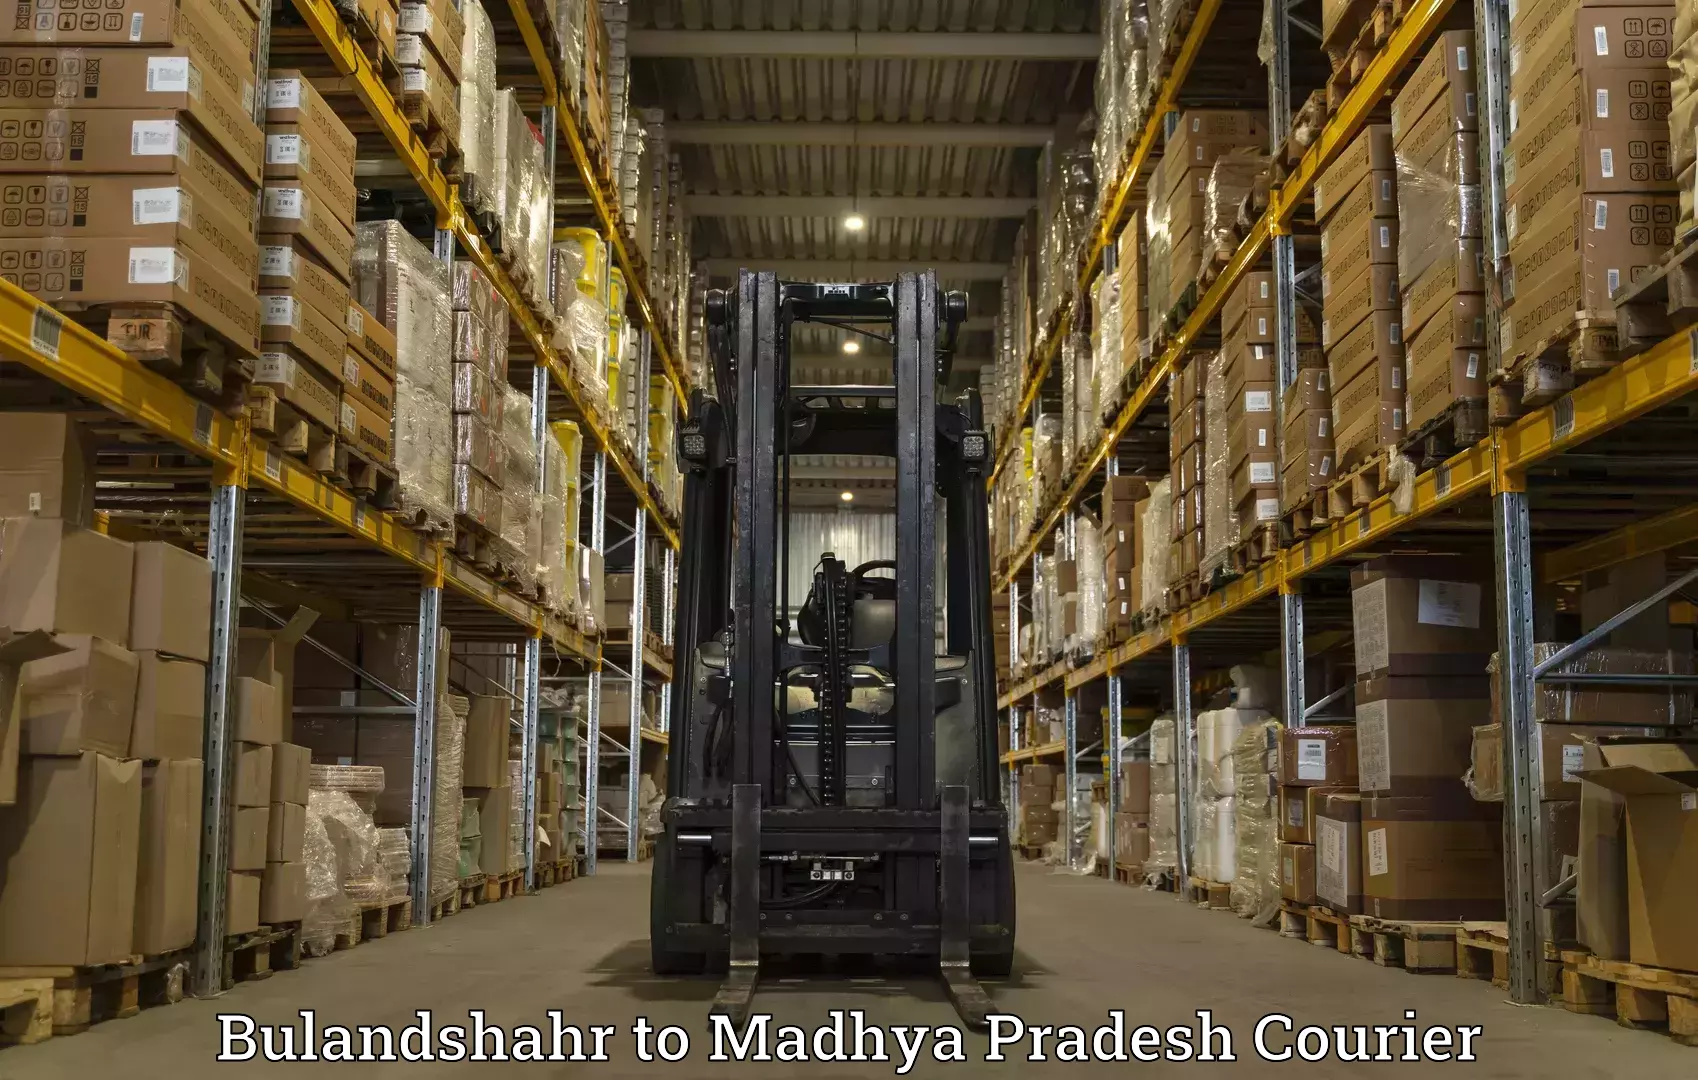 International parcel service Bulandshahr to Khajuraho